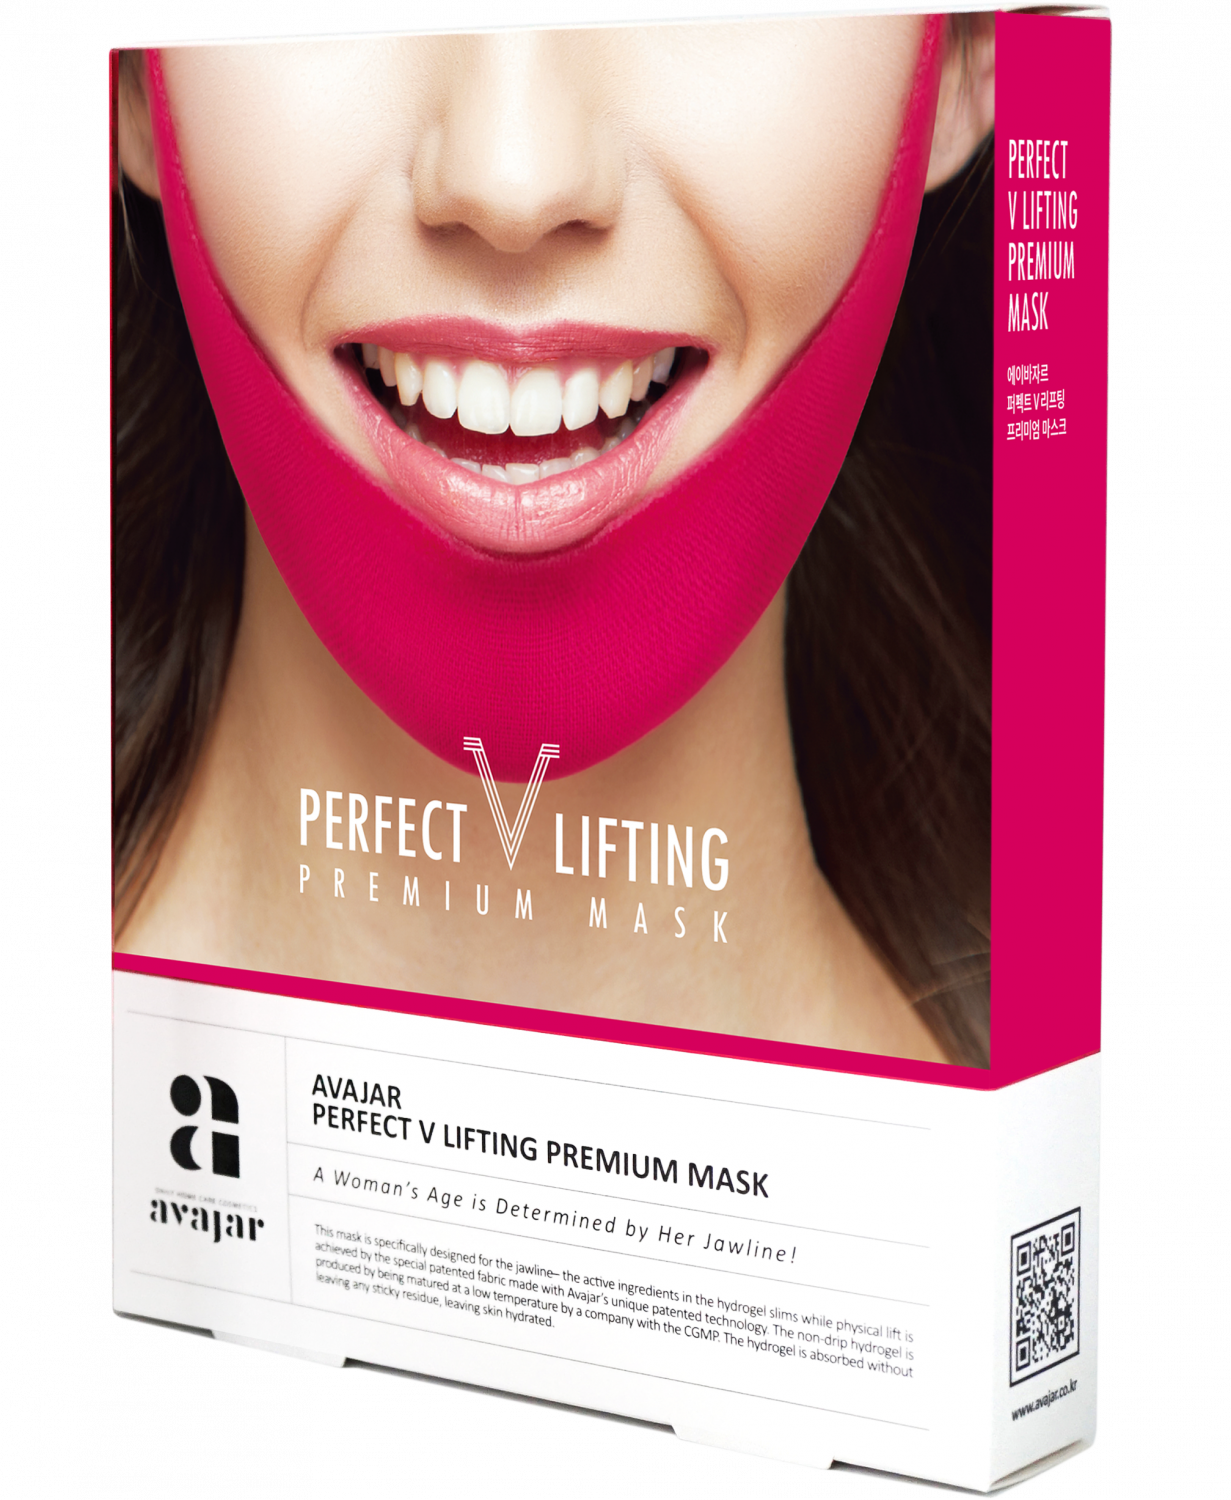 Avajar Perfect V Lifting Mask - 5p. - интернет-магазин профессиональной косметики Spadream, изображение 28703